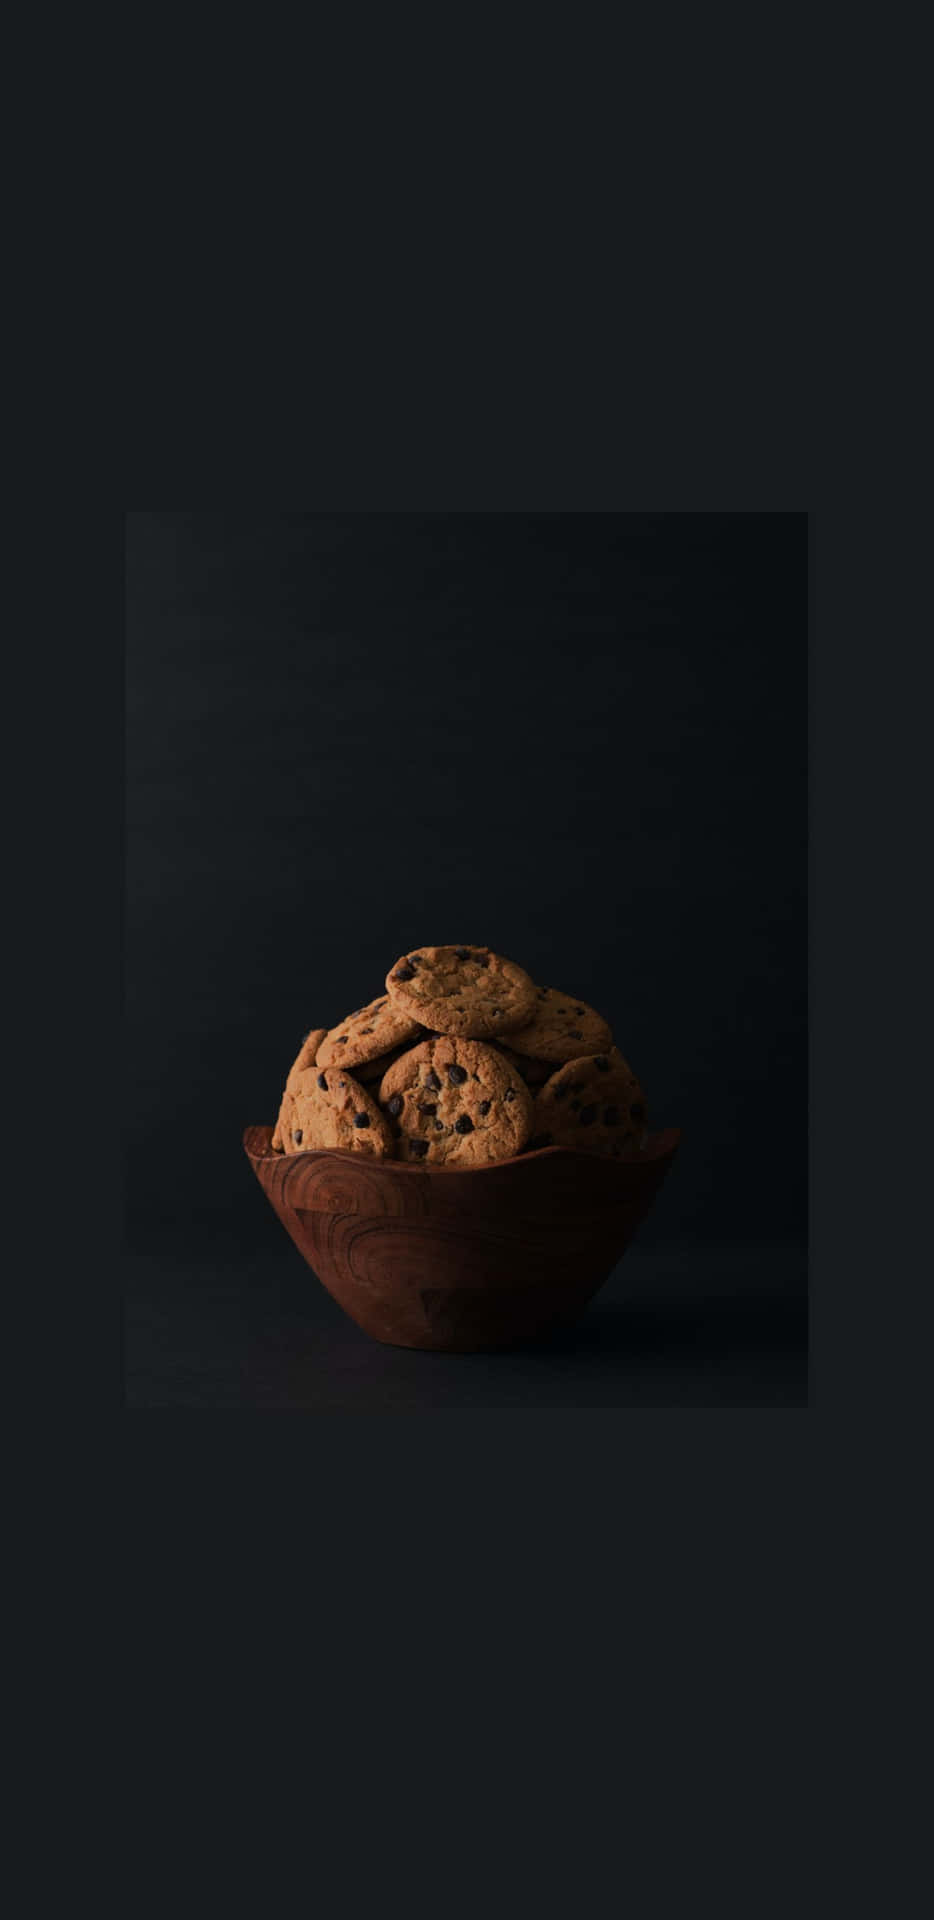 Hintergrundbildim Gourmet-stil Für Das Pixel 3xl Mit Cookies